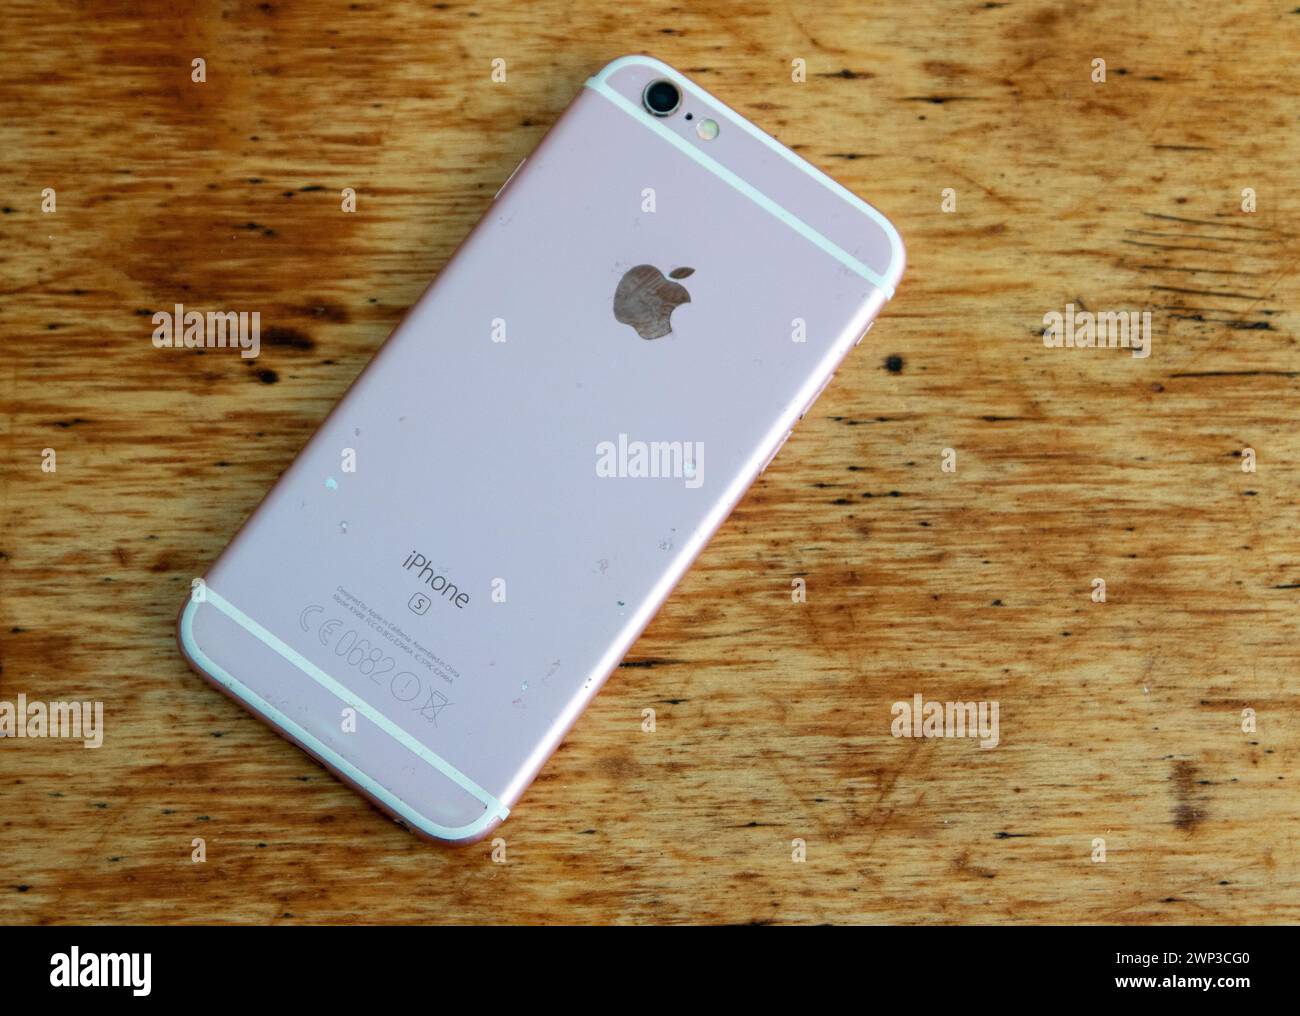 Ein gut gebrauchtes iPhone 6s Smartphone, das 2015 eingeführt wurde und das erste mit einer Roségold-Farboption ist Stockfoto